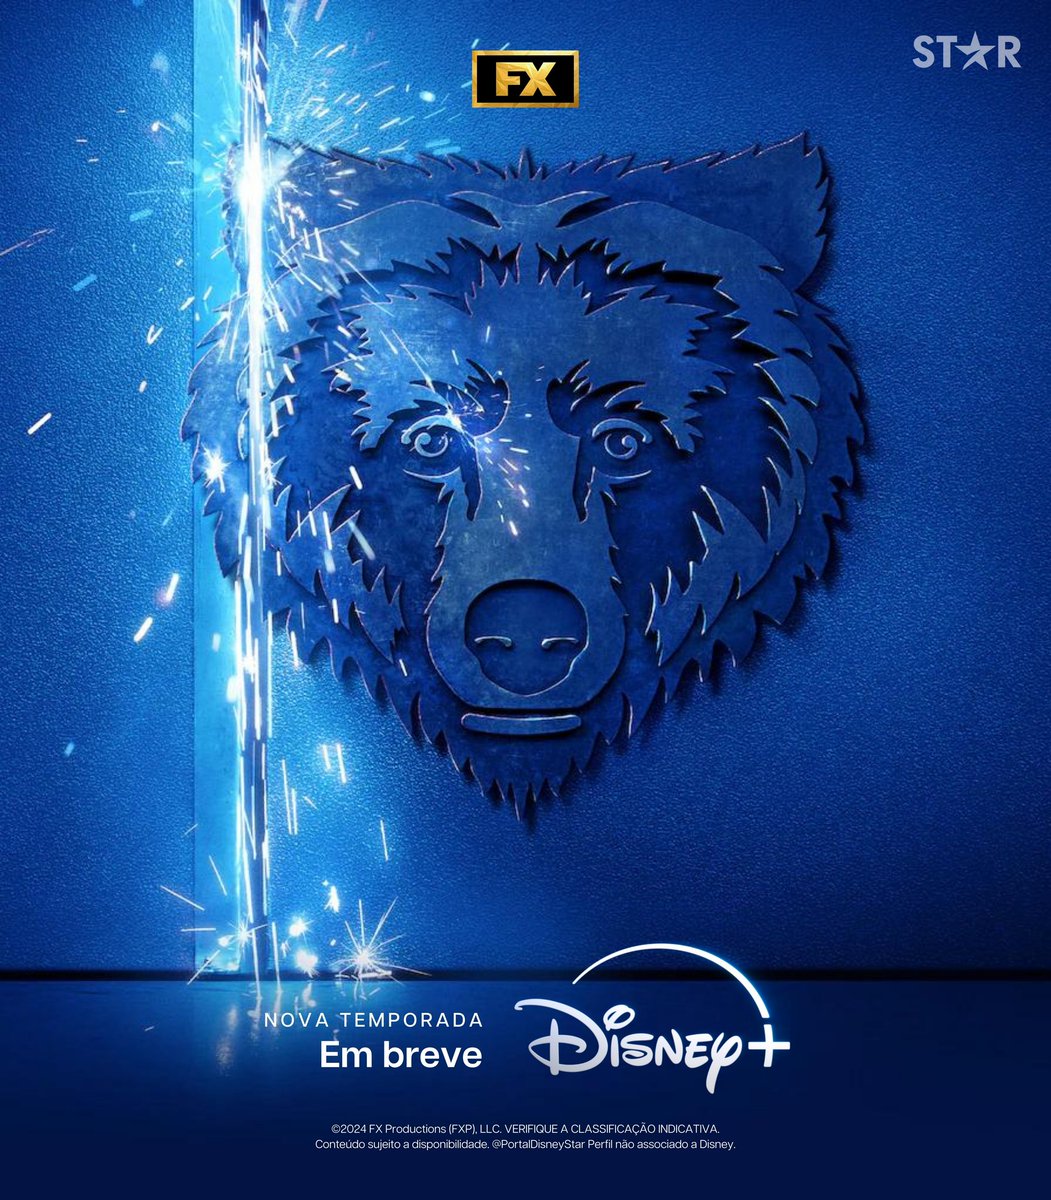 Período de reservas aberto em #OUrso.

Nova temporada de O Urso, em breve, só no Disney+. 

#TheBear #DisneyPlus